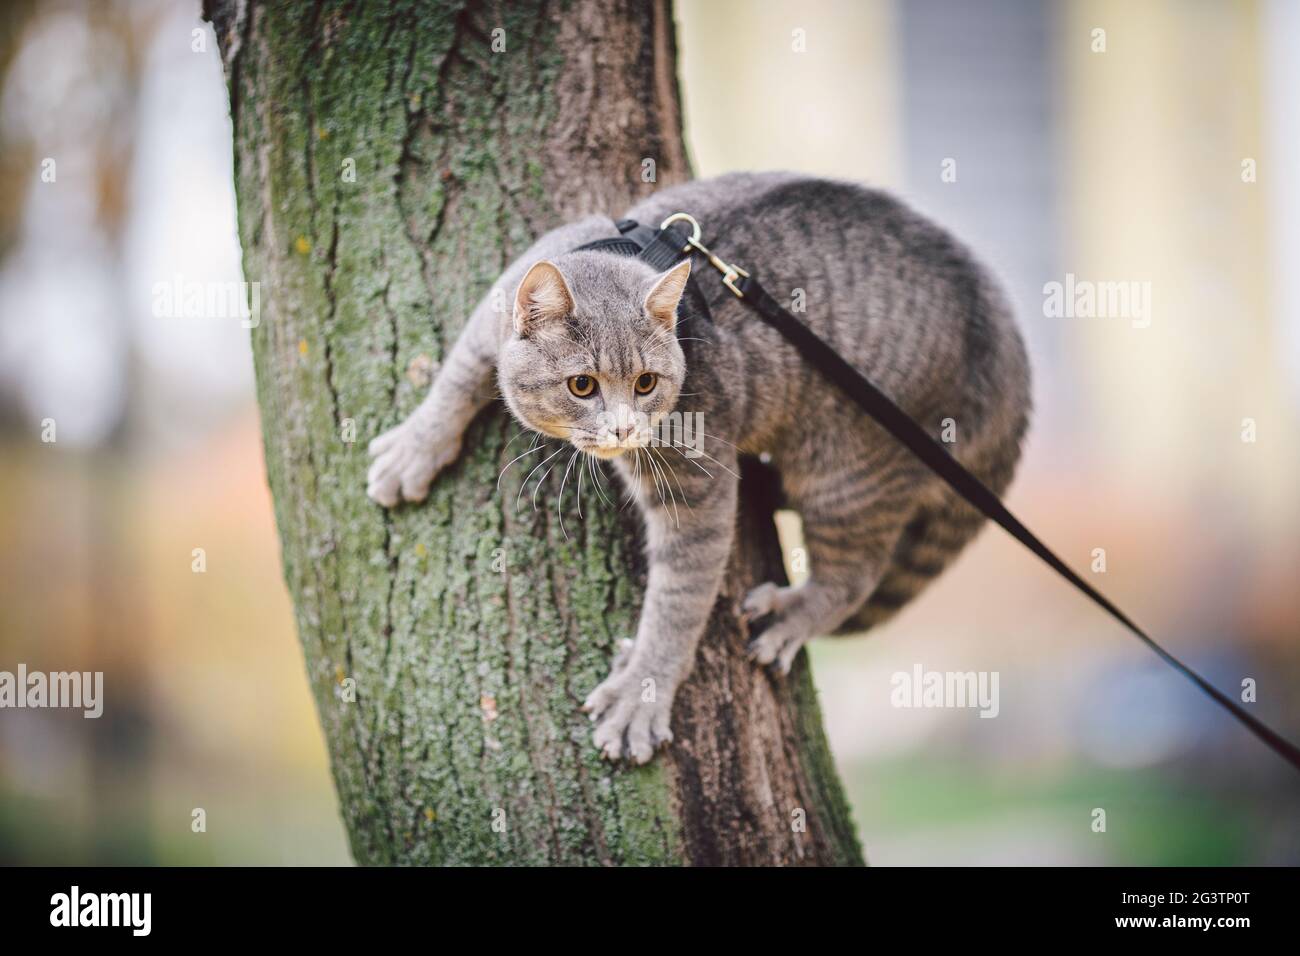 Ein männlicher Hausbewohner junge niedliche Raubkatze klettert Baum, gekleidet Haustier Leine Geschirr gepflegt, Jagd nach Vögeln und kleinen Tieren Stockfoto